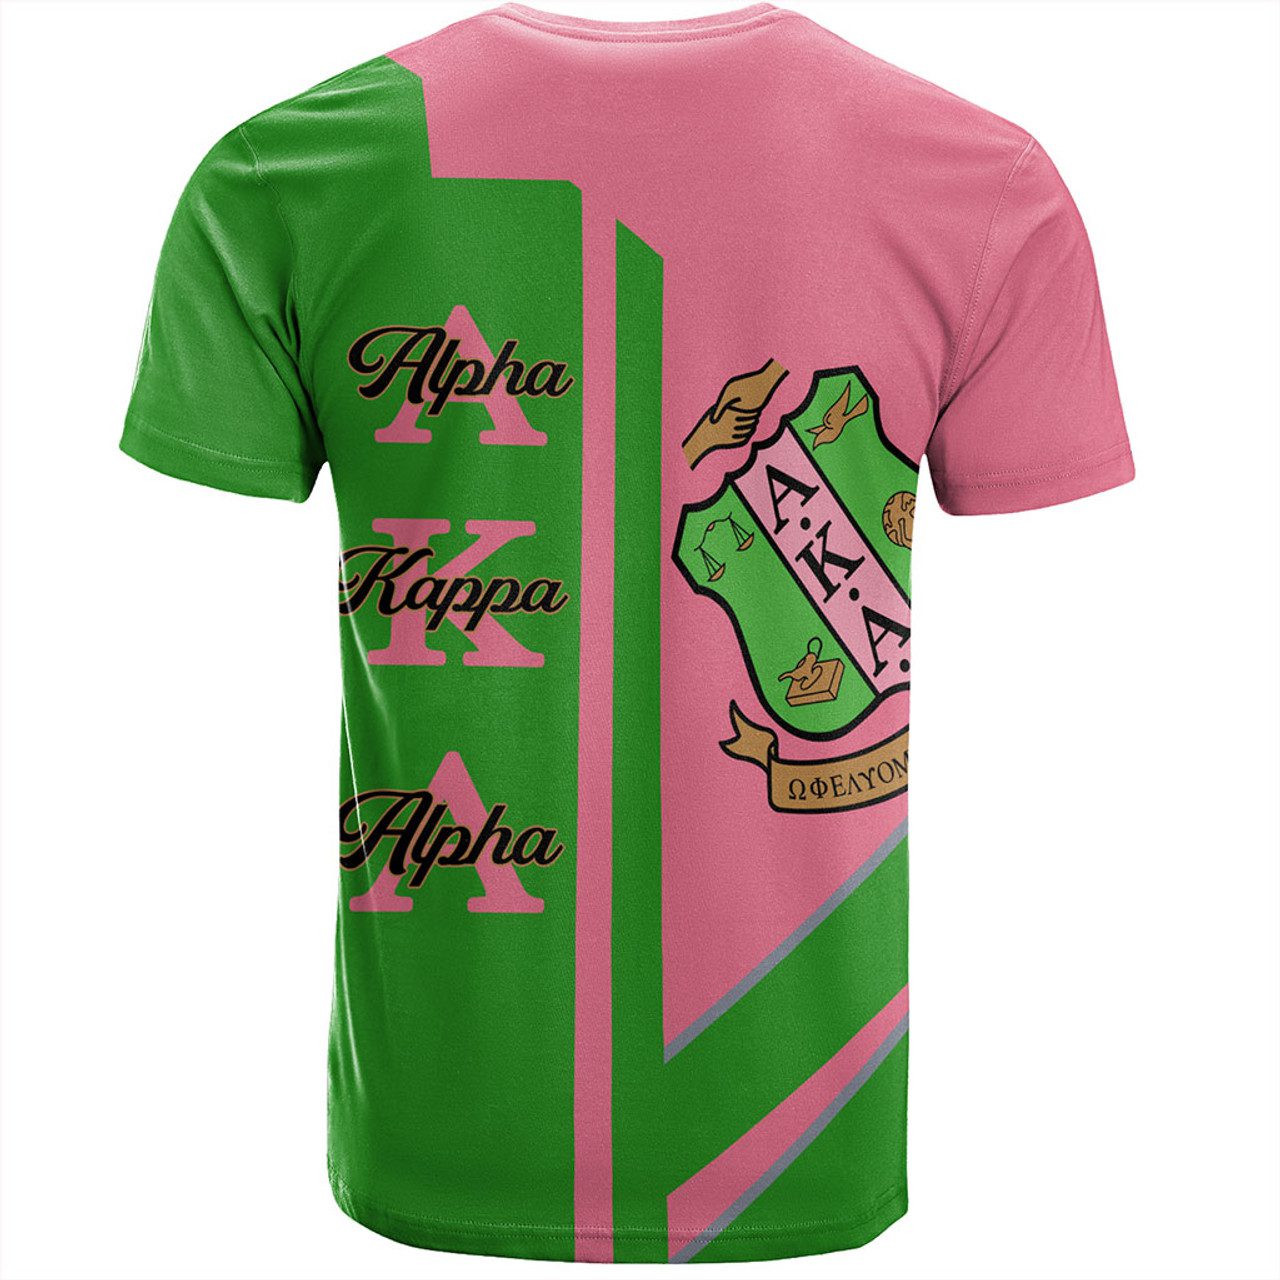 Alpha Kappa Alpha T-Shirt Half Concept